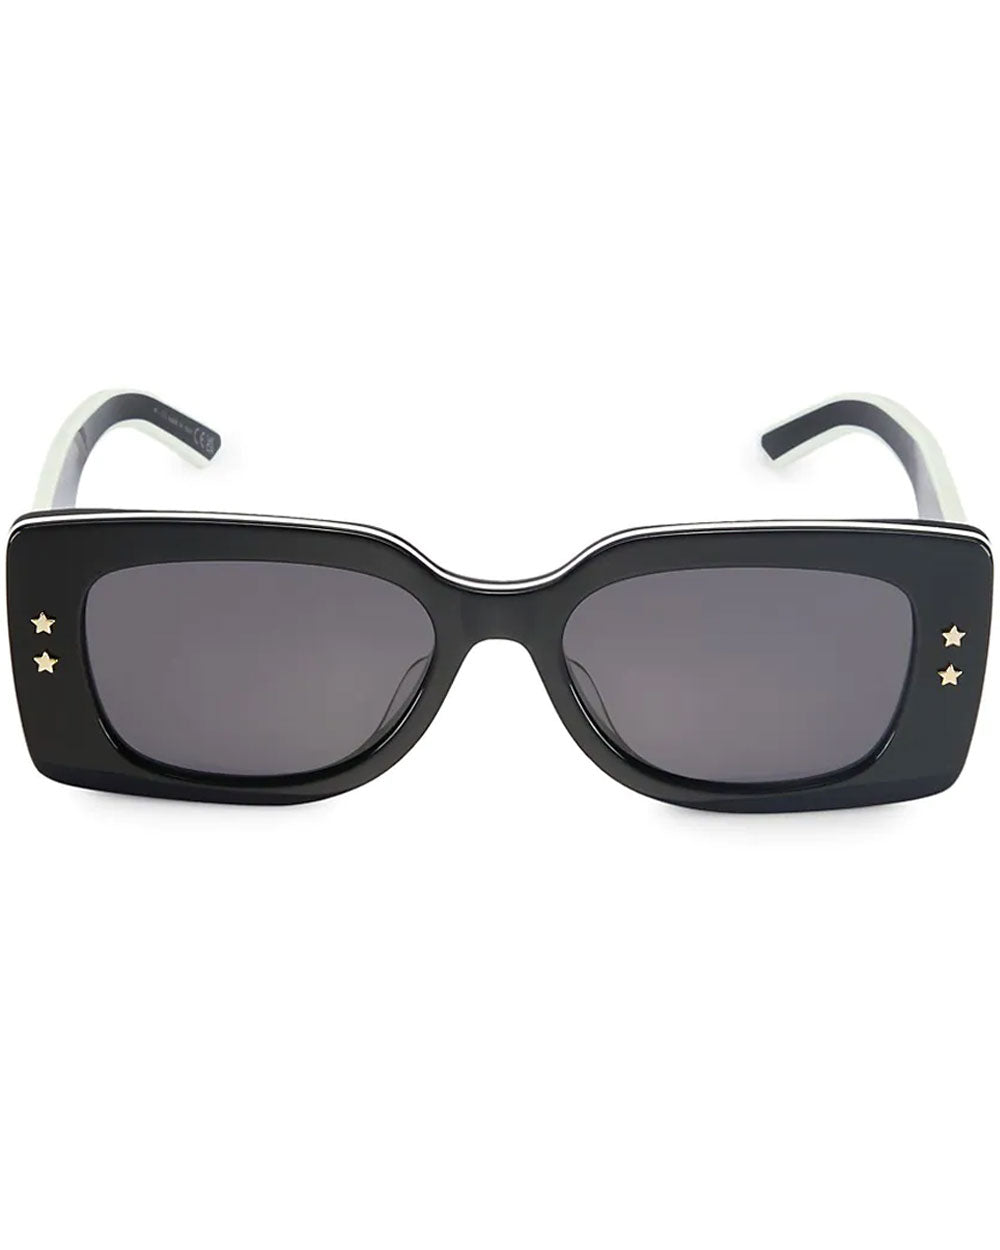 DiorPacific S1U Black Square Sunglasses